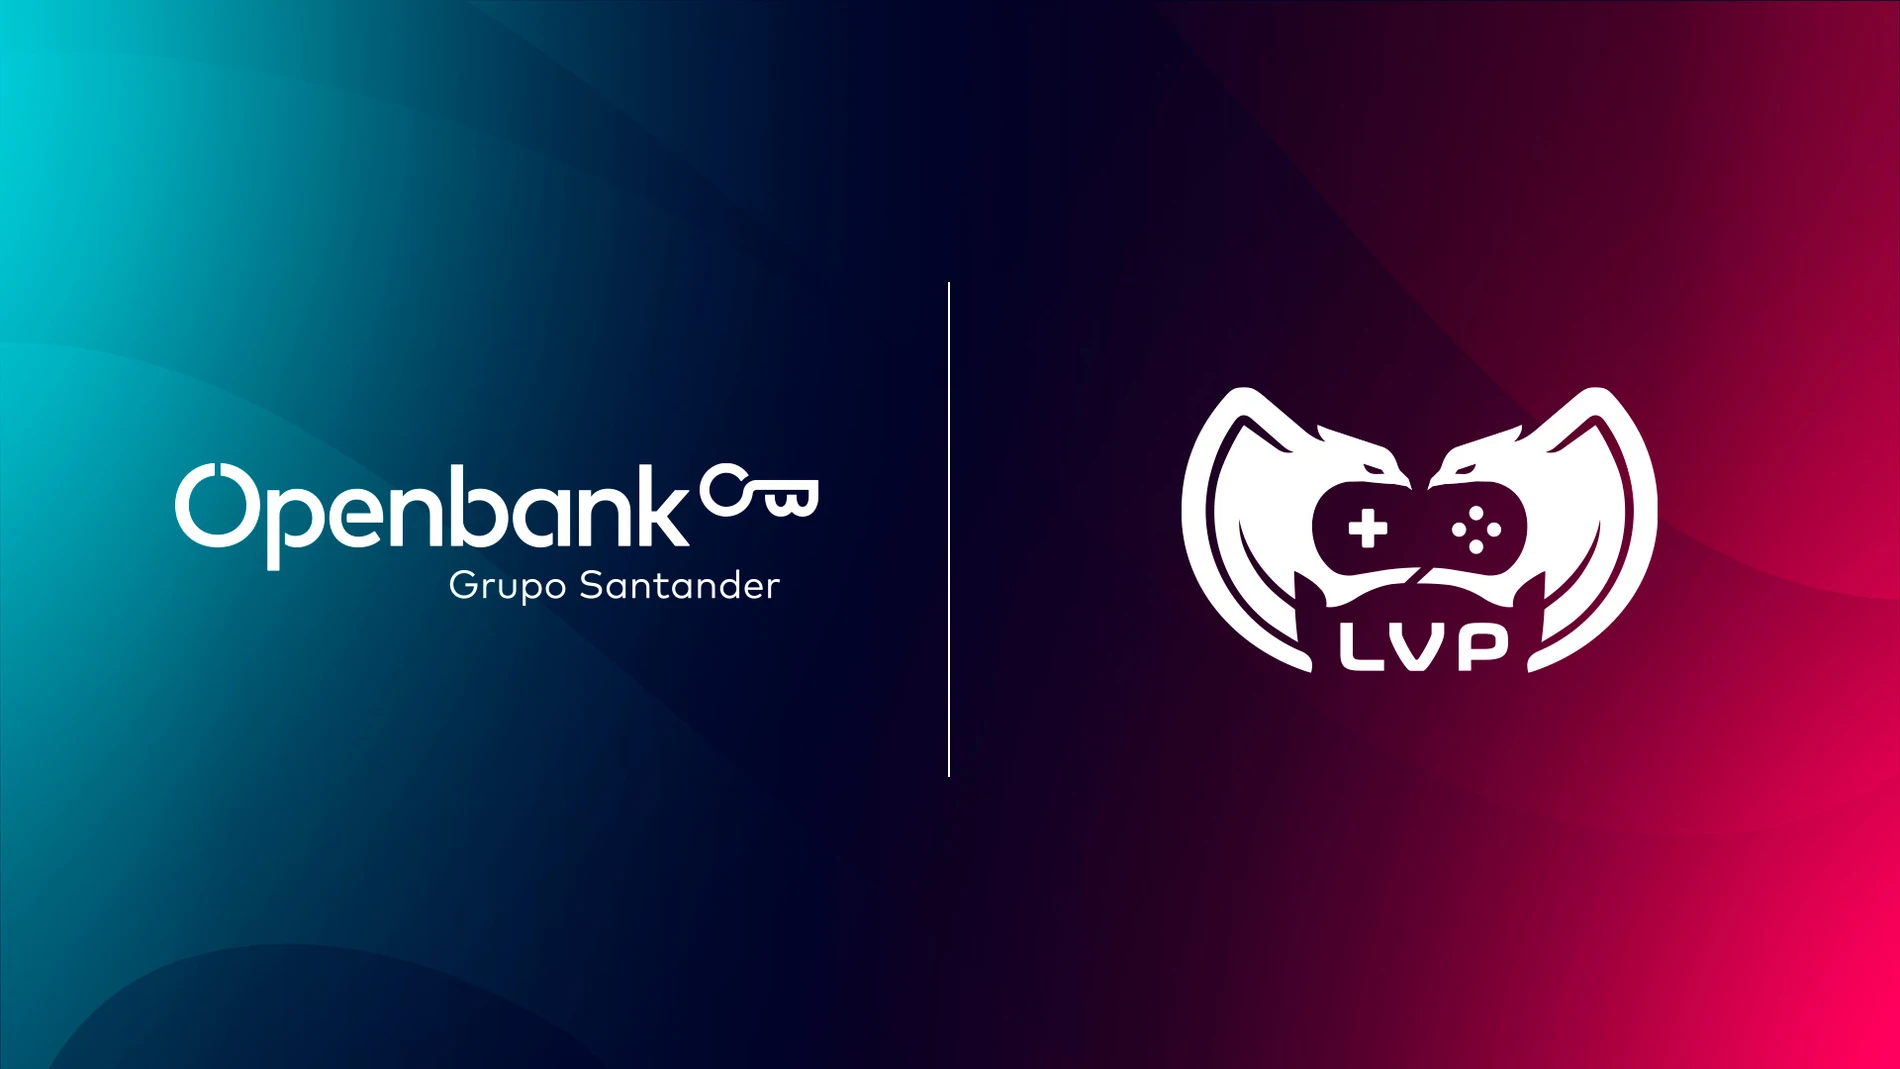 Openbank | LVP